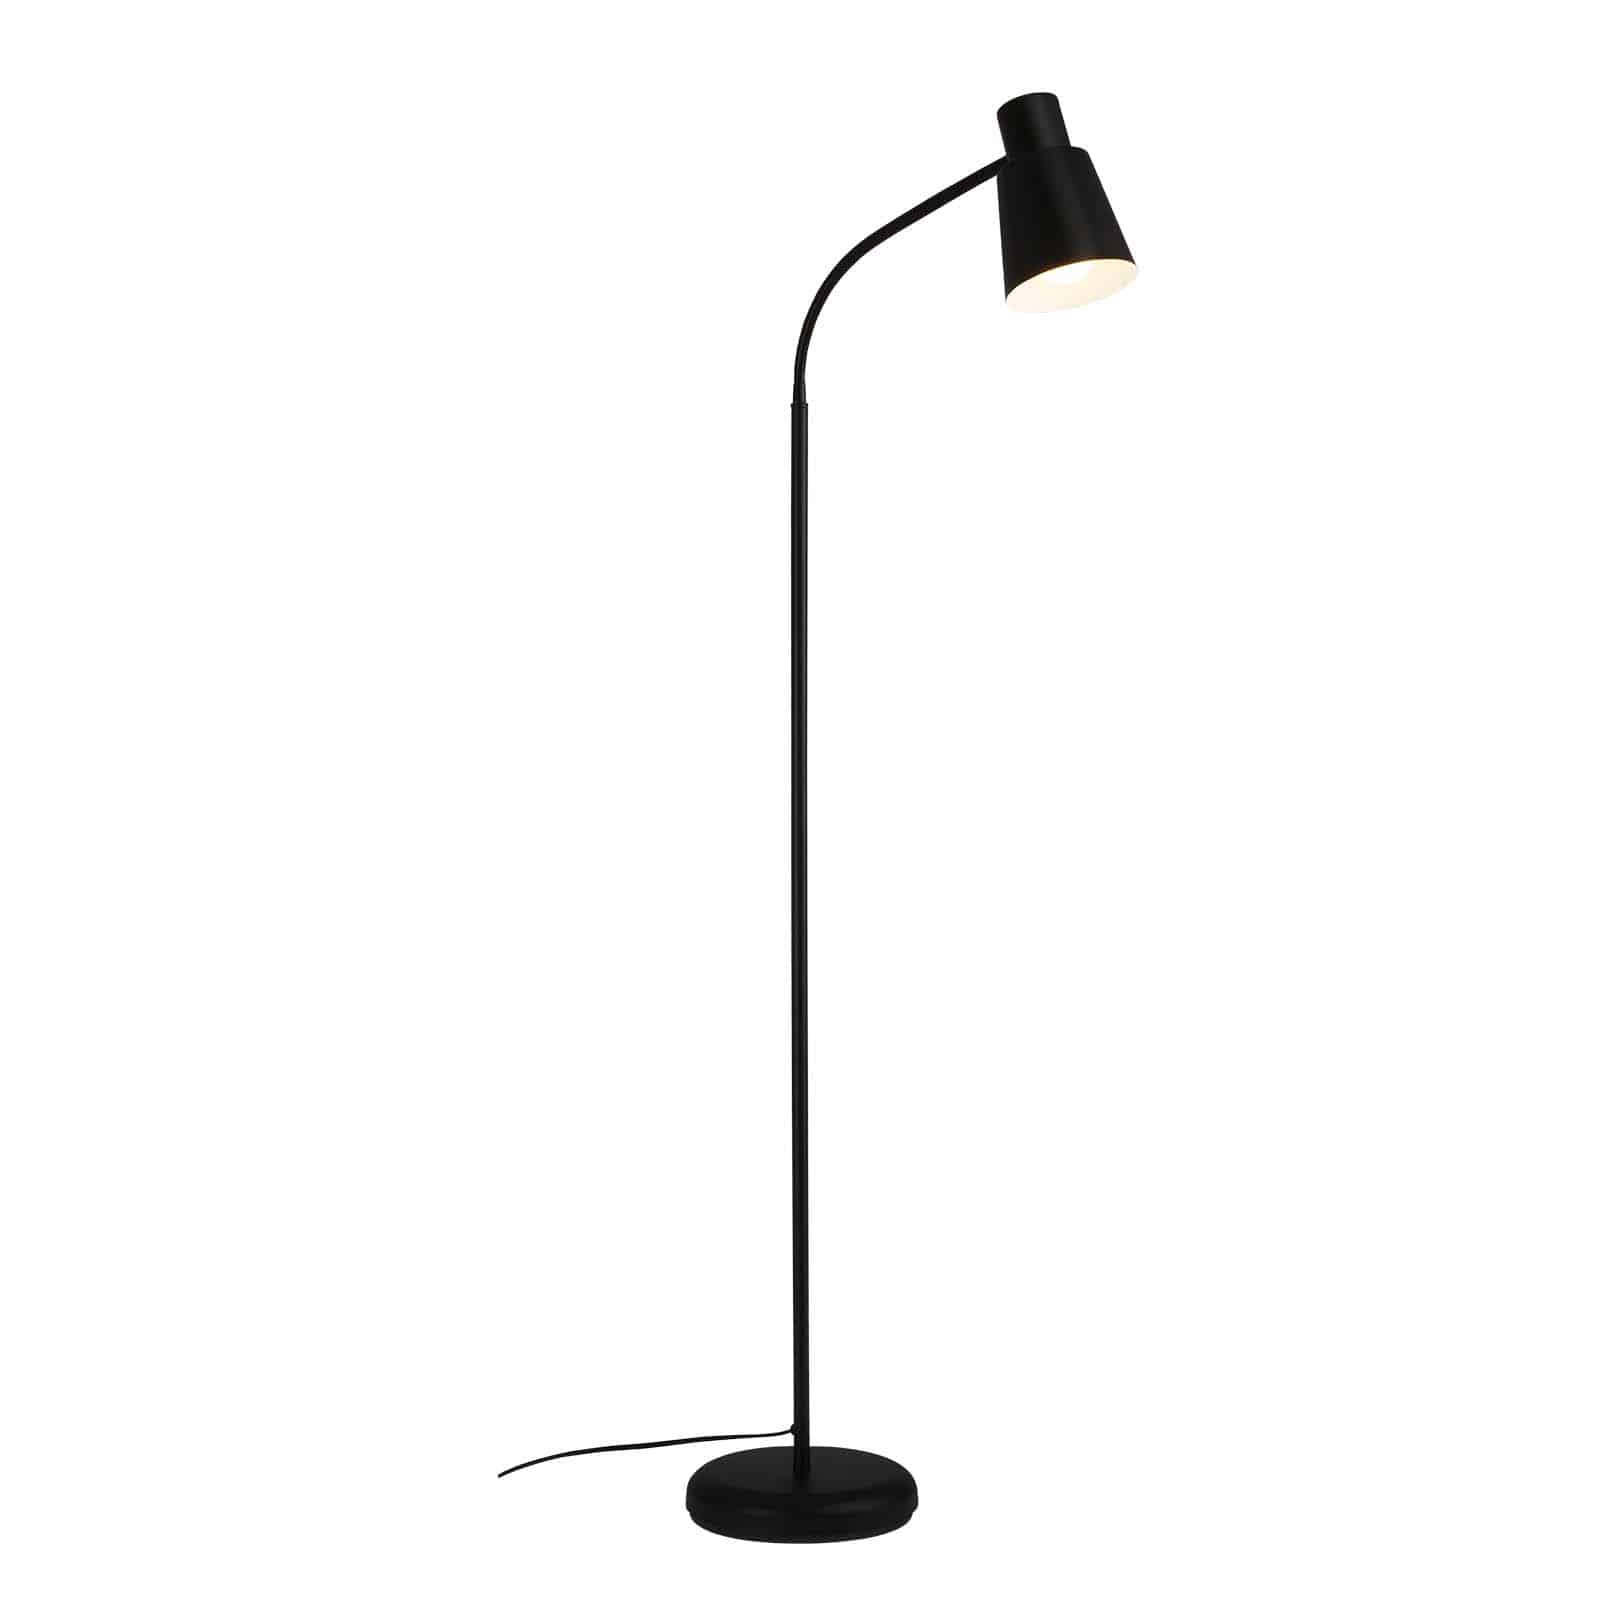 Standing lamp, 128 cm, 1x E27, max. 10W, black